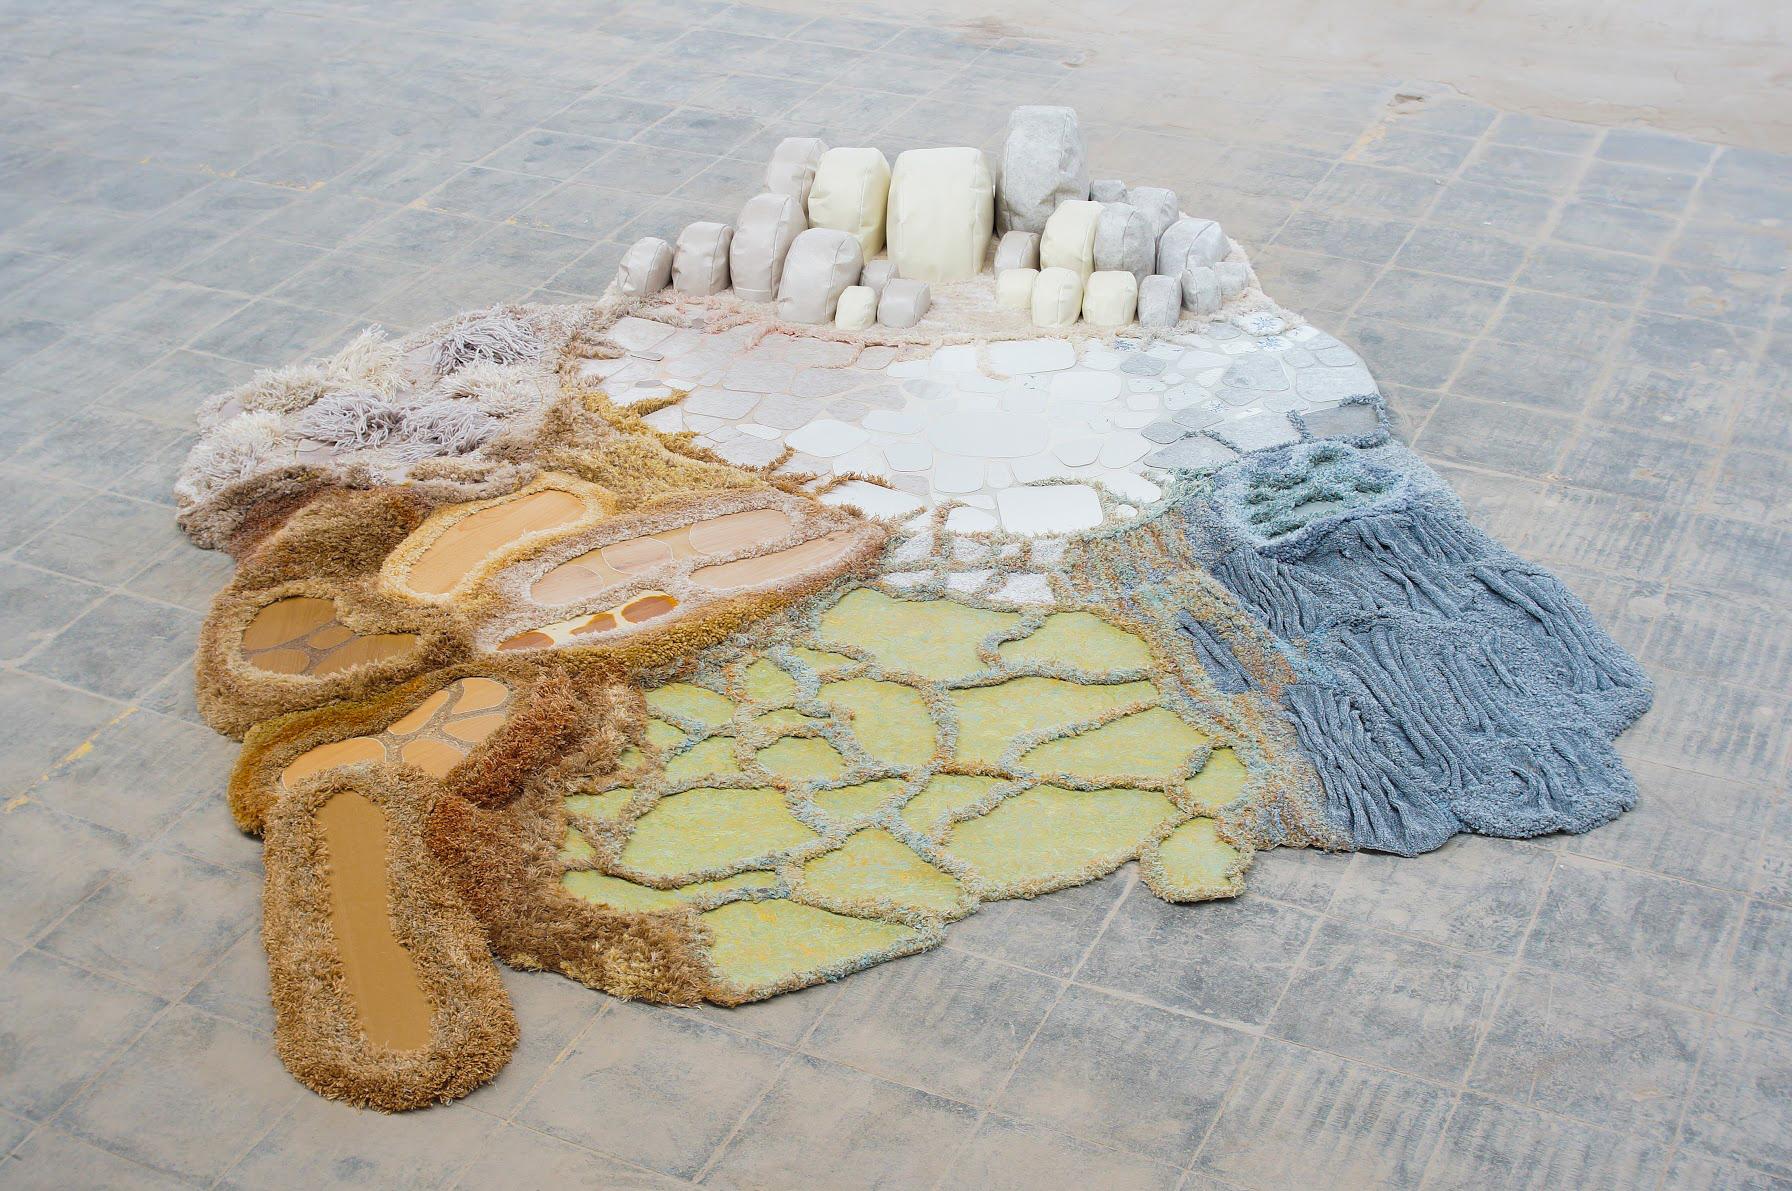 Unique Molten Memories Floor Sculpture by Sarah Roseman
Dimensions: D 300cm x W 265cm x H 45cm
Materials: Textile (cotton, jute, wool, acrylic, polypropylene), vinyl, ceramic tile, polyurethane rubber, laminate wood, linoleum, polyurethane